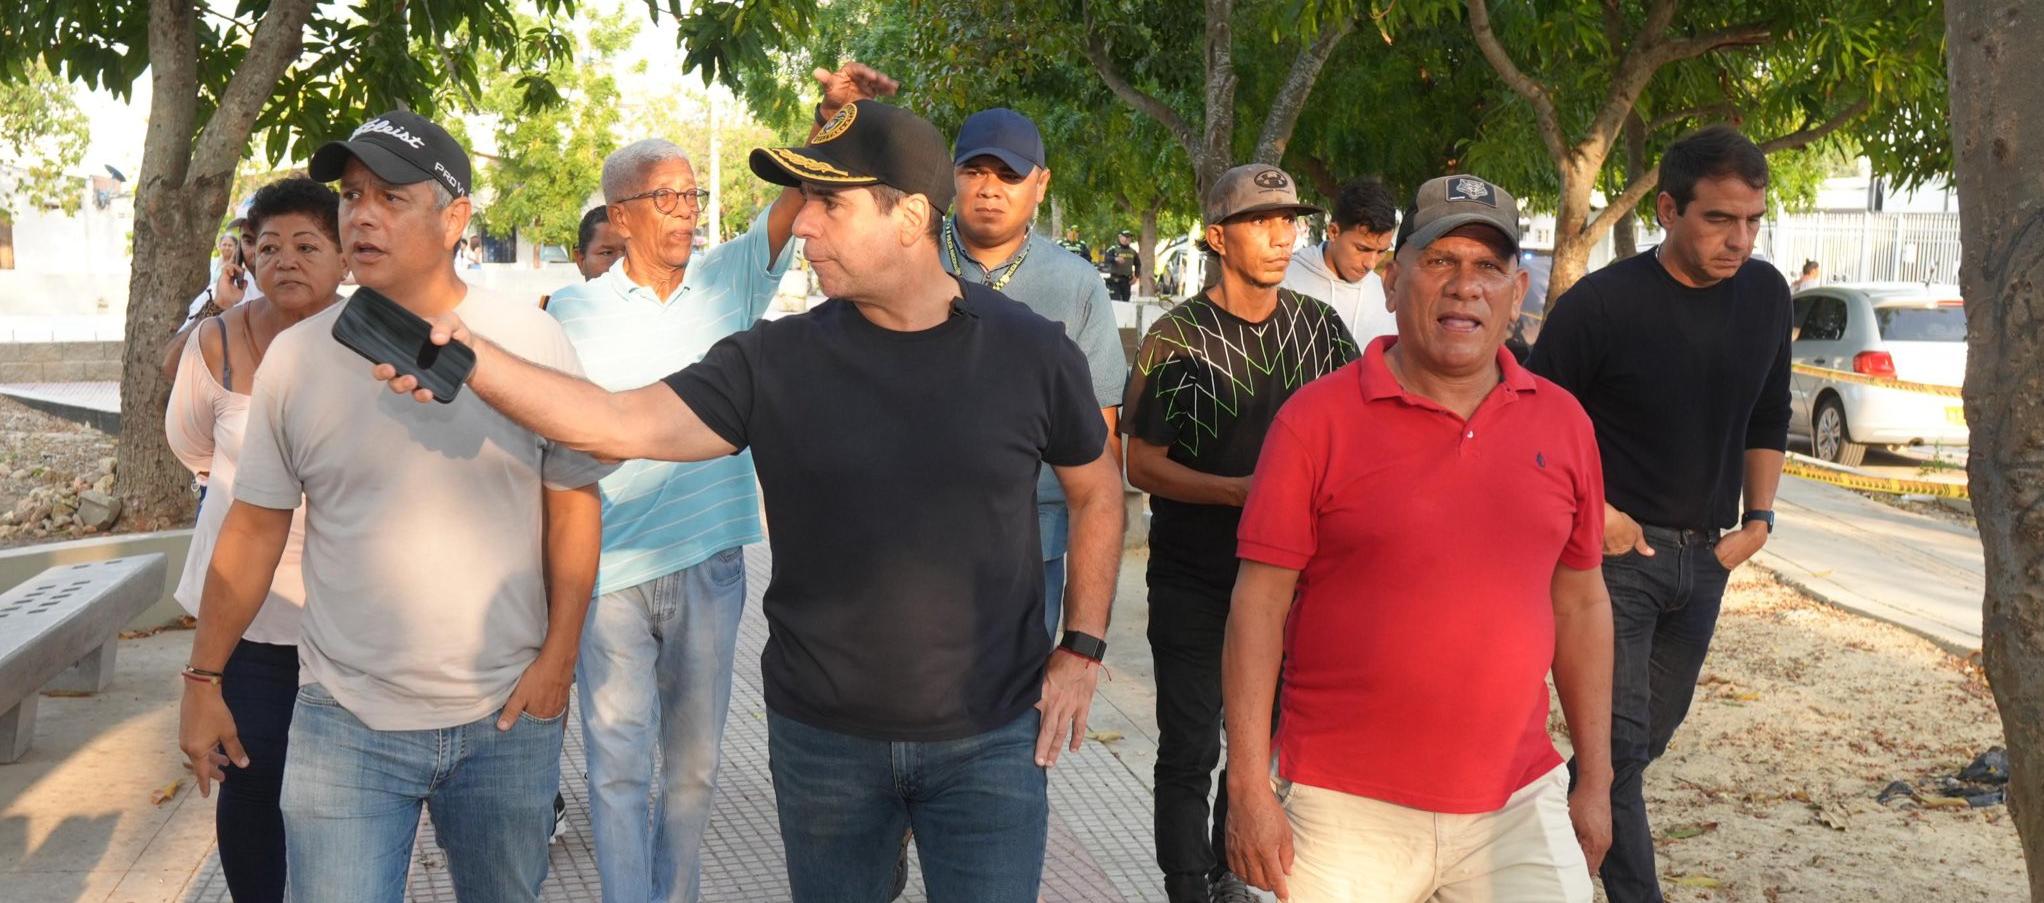 El alcalde estuvo acompañado por la comunidad de El Limón.